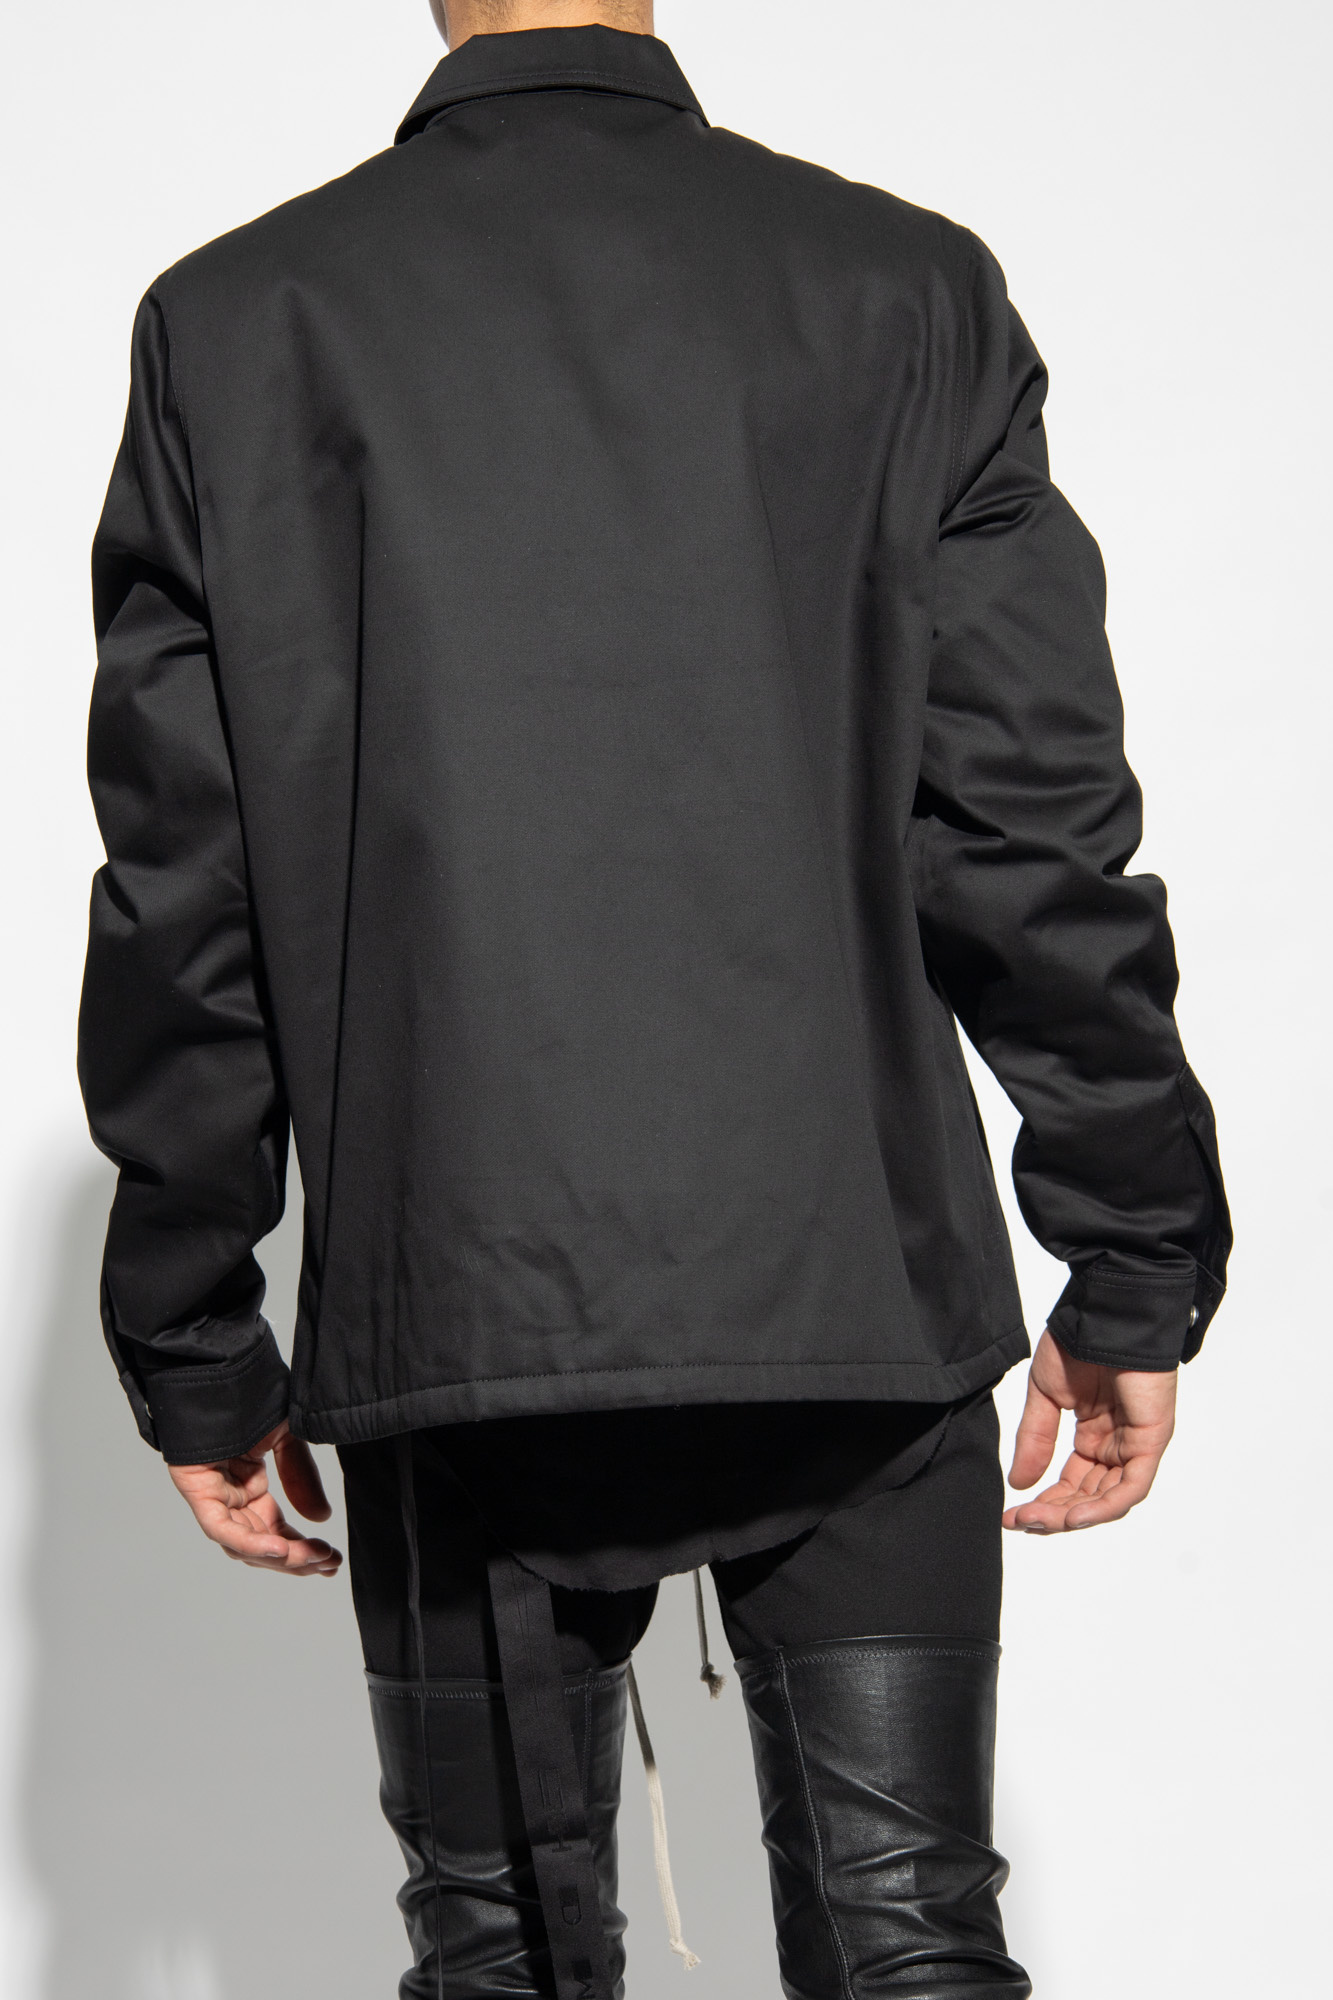 Sails Beach Shirt ‘Zipfront’ jacket